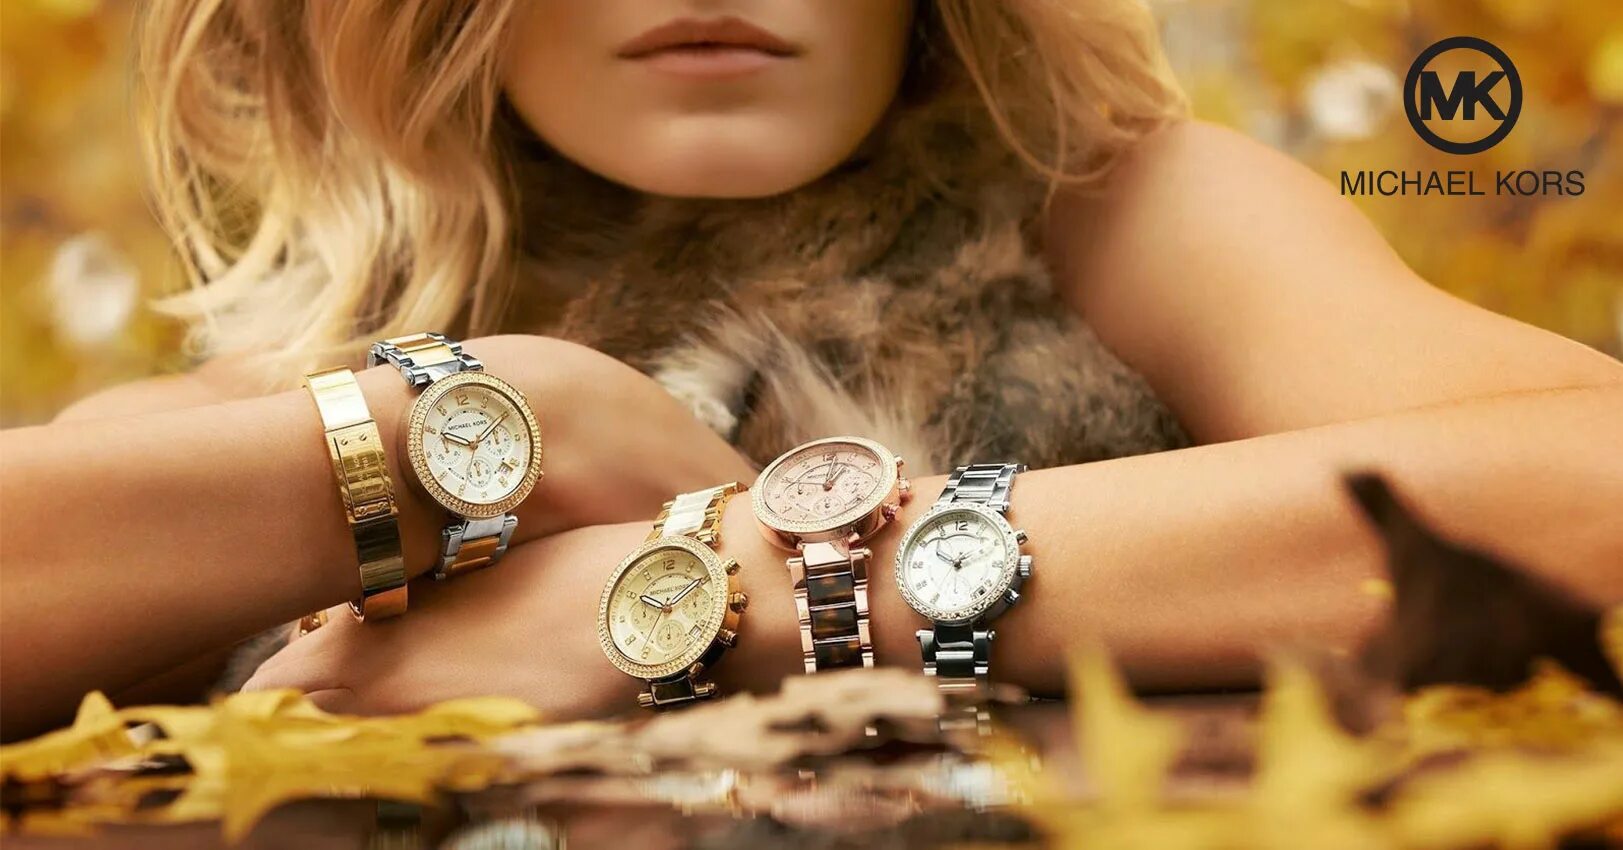 Красивые девушки с часами. Часы женские. Девушка с наручными часами. Часы женские красивые стильные. Часы классические женские.